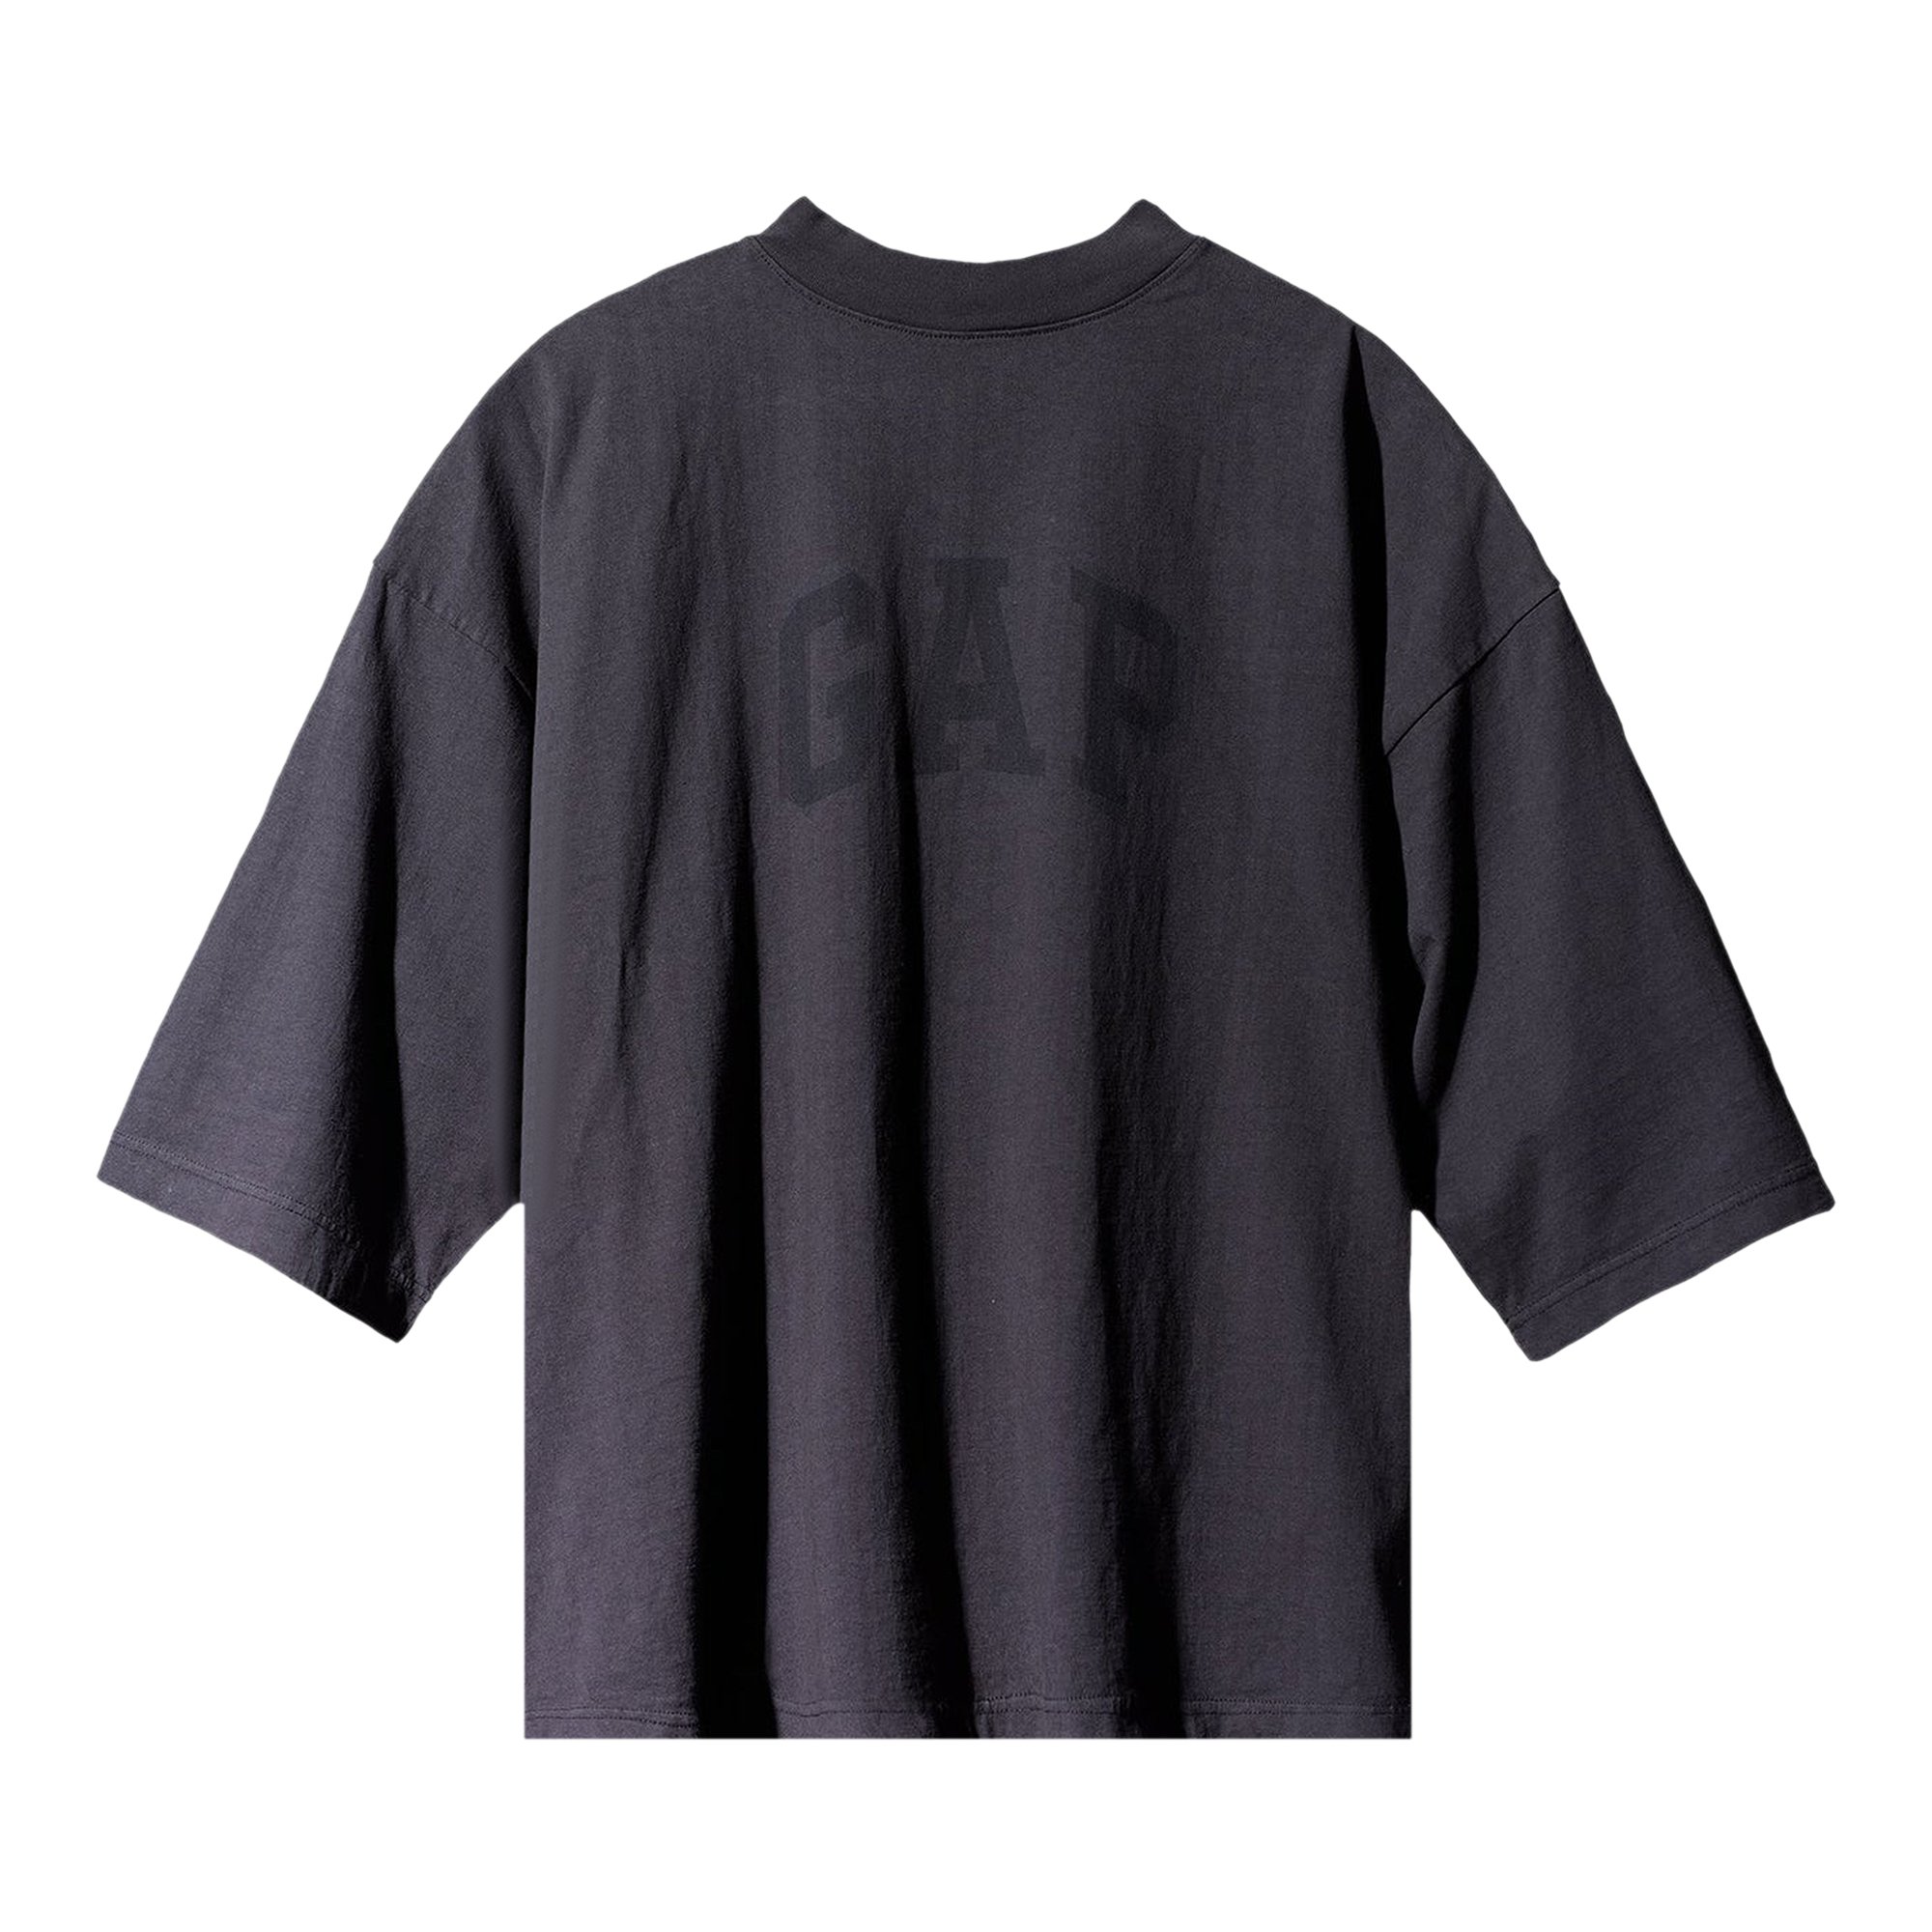 Yeezy Gap Engineered by Balenciaga Dove 3/4 Sleeve Tee 'Black' | GOAT